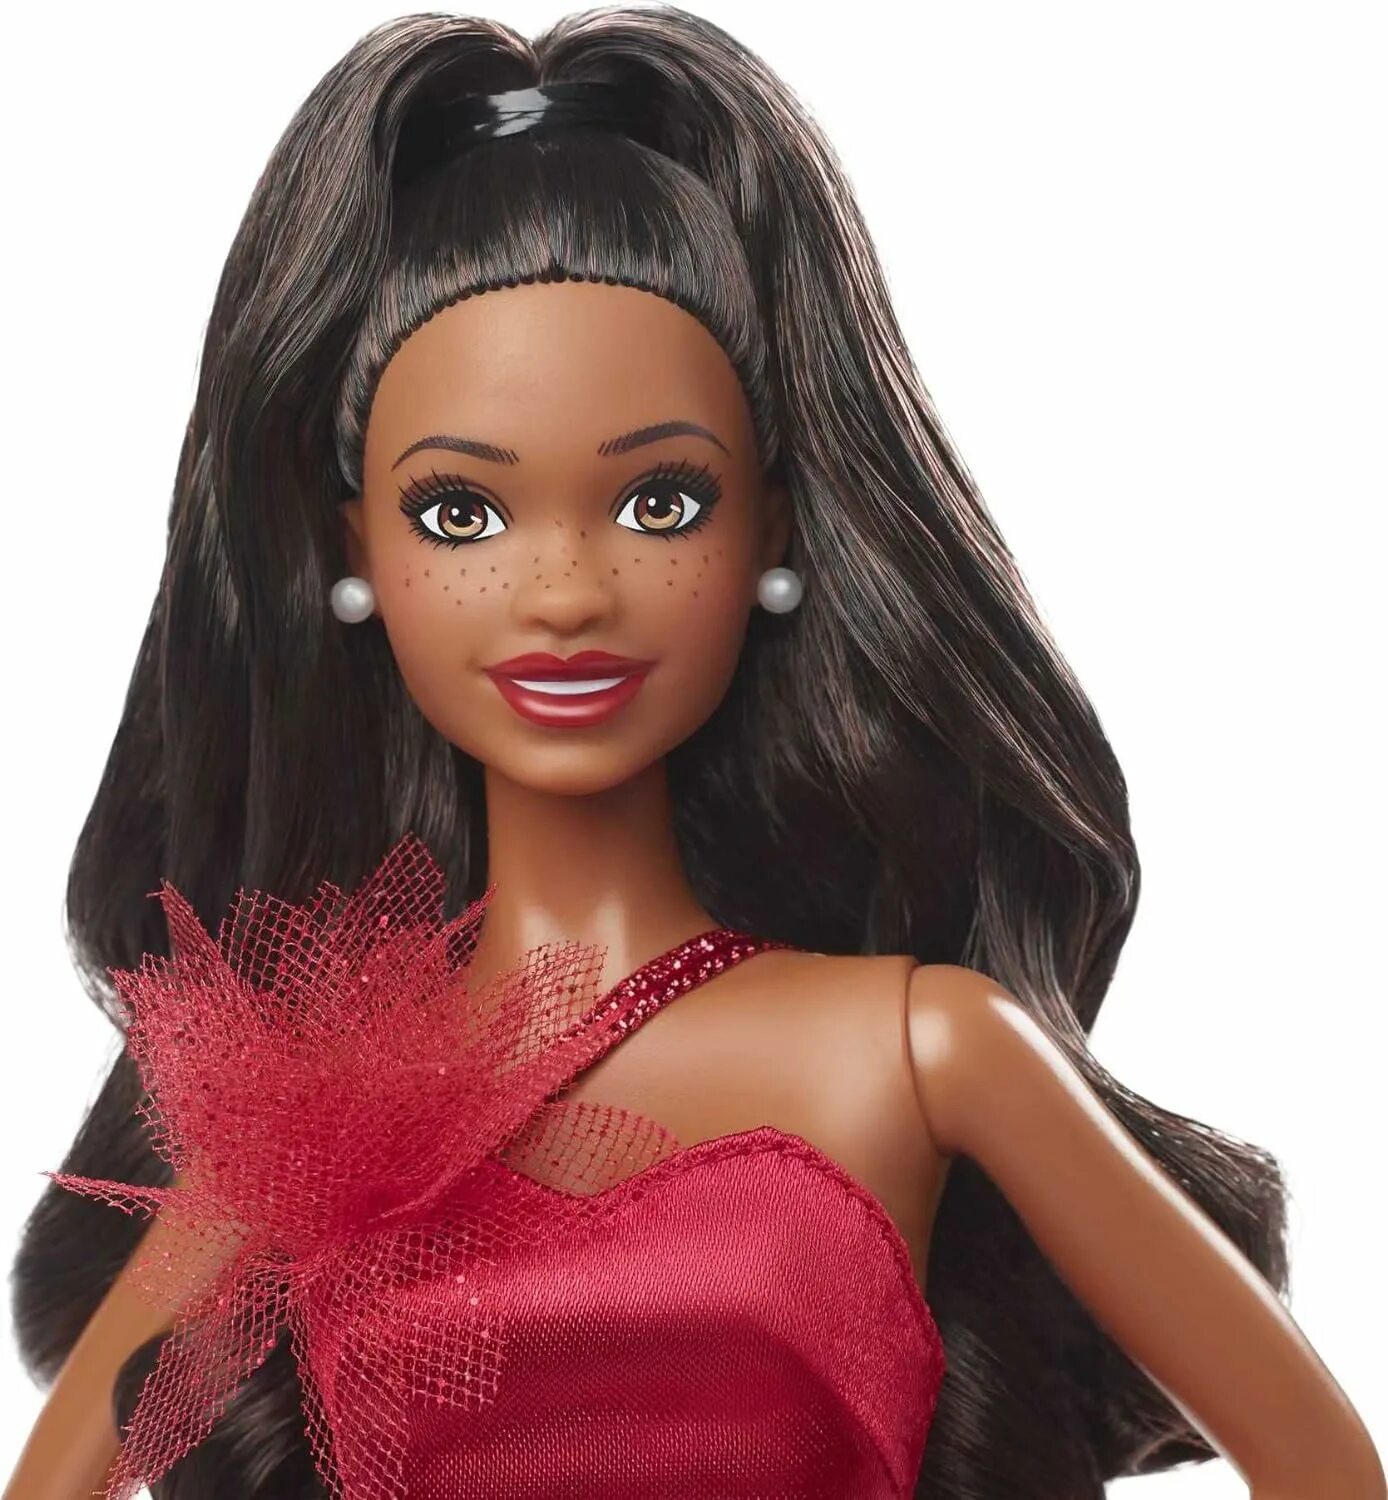 Барби holiday. Барби Холидей 2022. Кукла Barbie 2022 Holiday Doll. Барби Хэппи Холидей. Маттел Барби Холидей 2022.